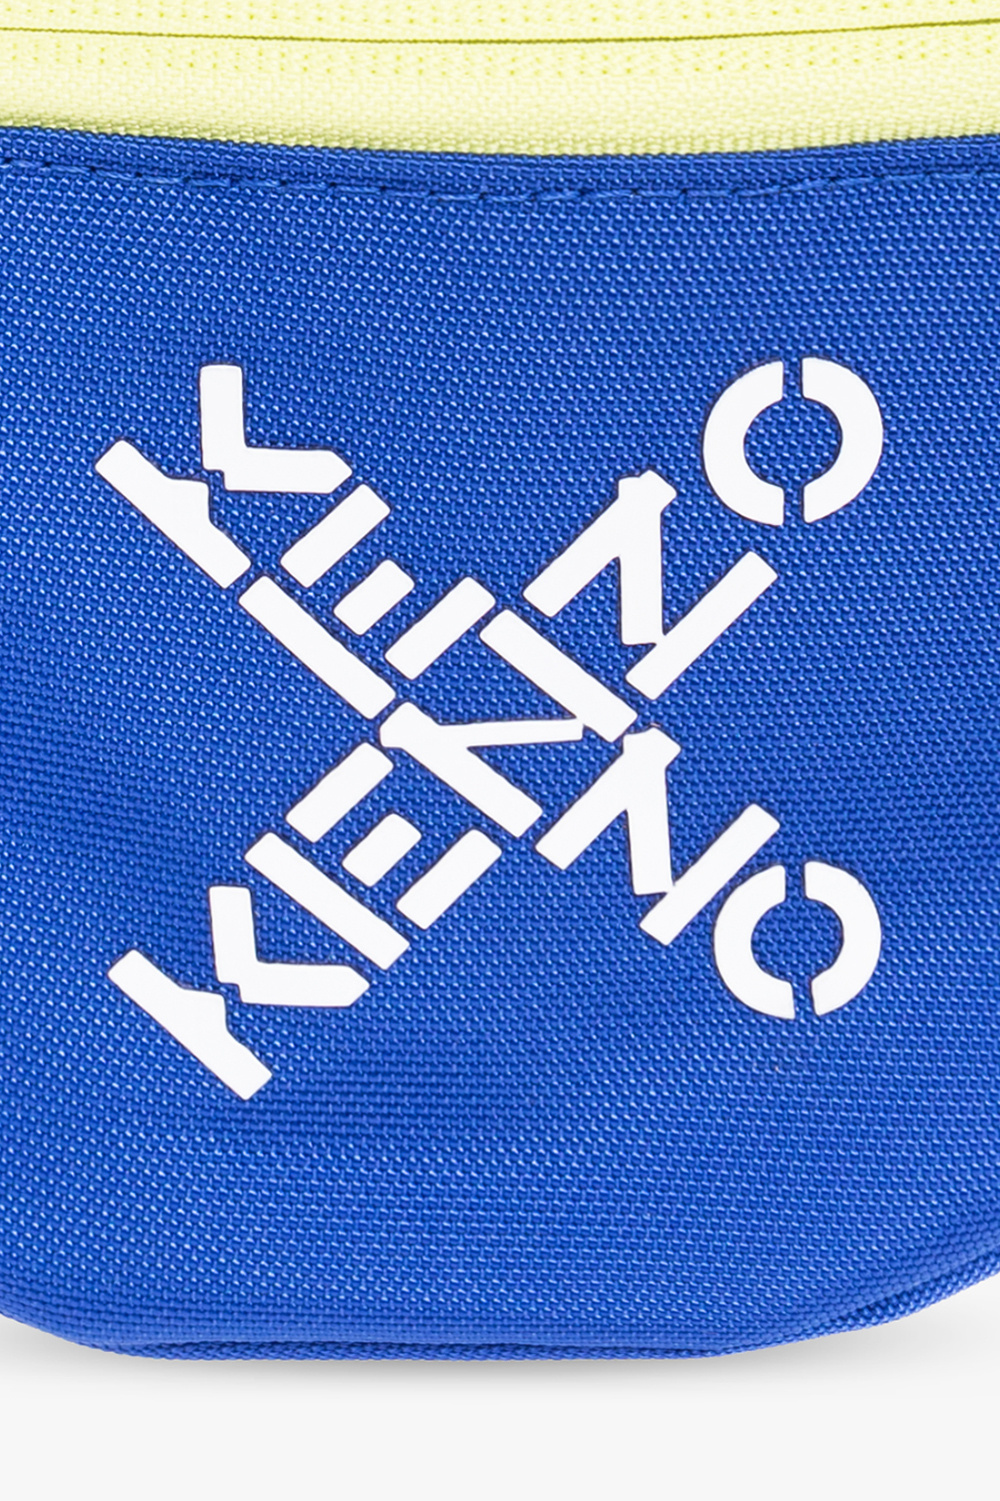 Kenzo Kids Herschel Nova Mini Backpack